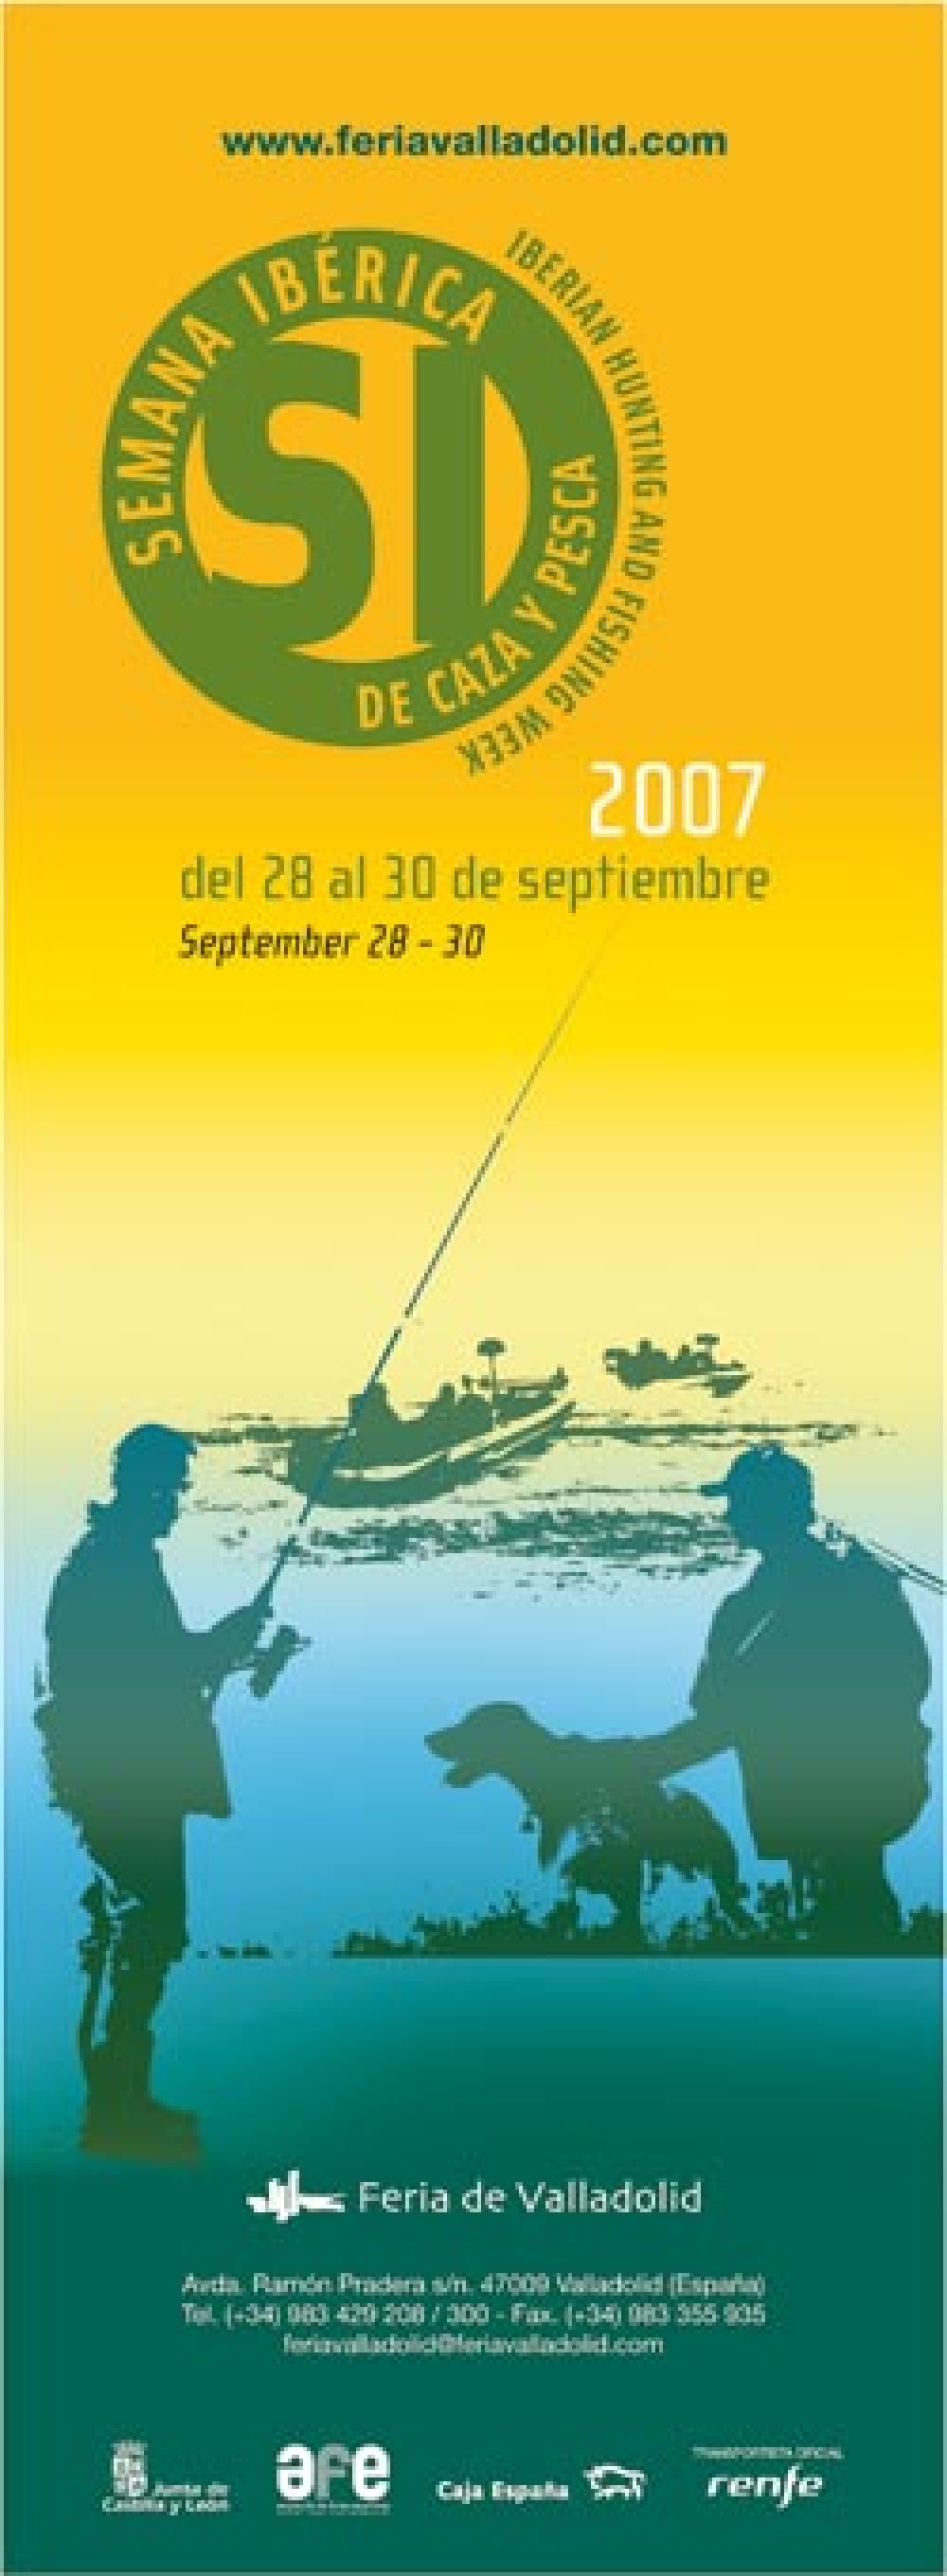 El próximo viernes comienza la octava edición de la Semana Ibérica de Caza y Pesca